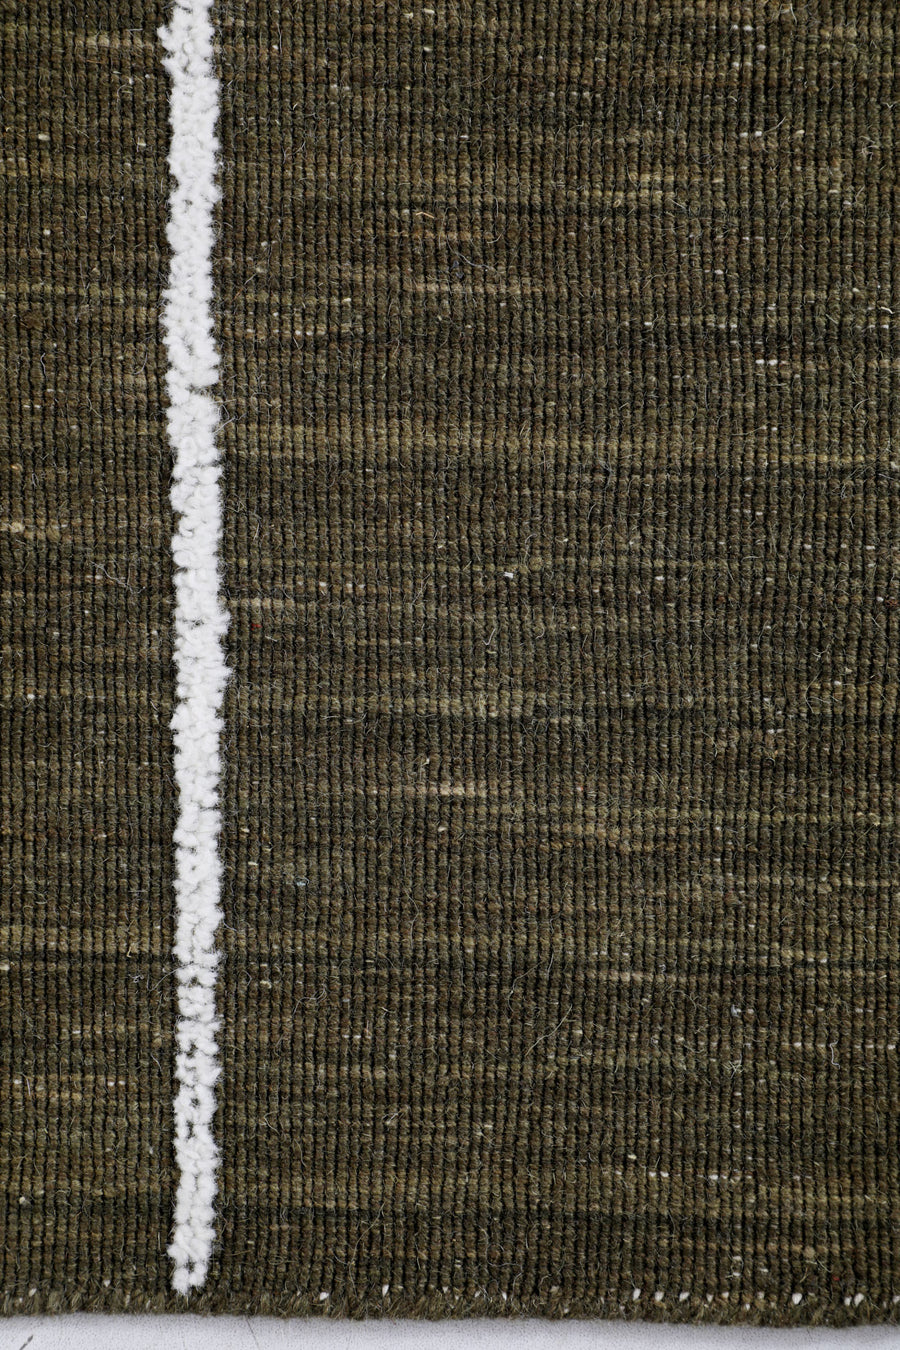 Haarlam Wool Piano Pattern Rug